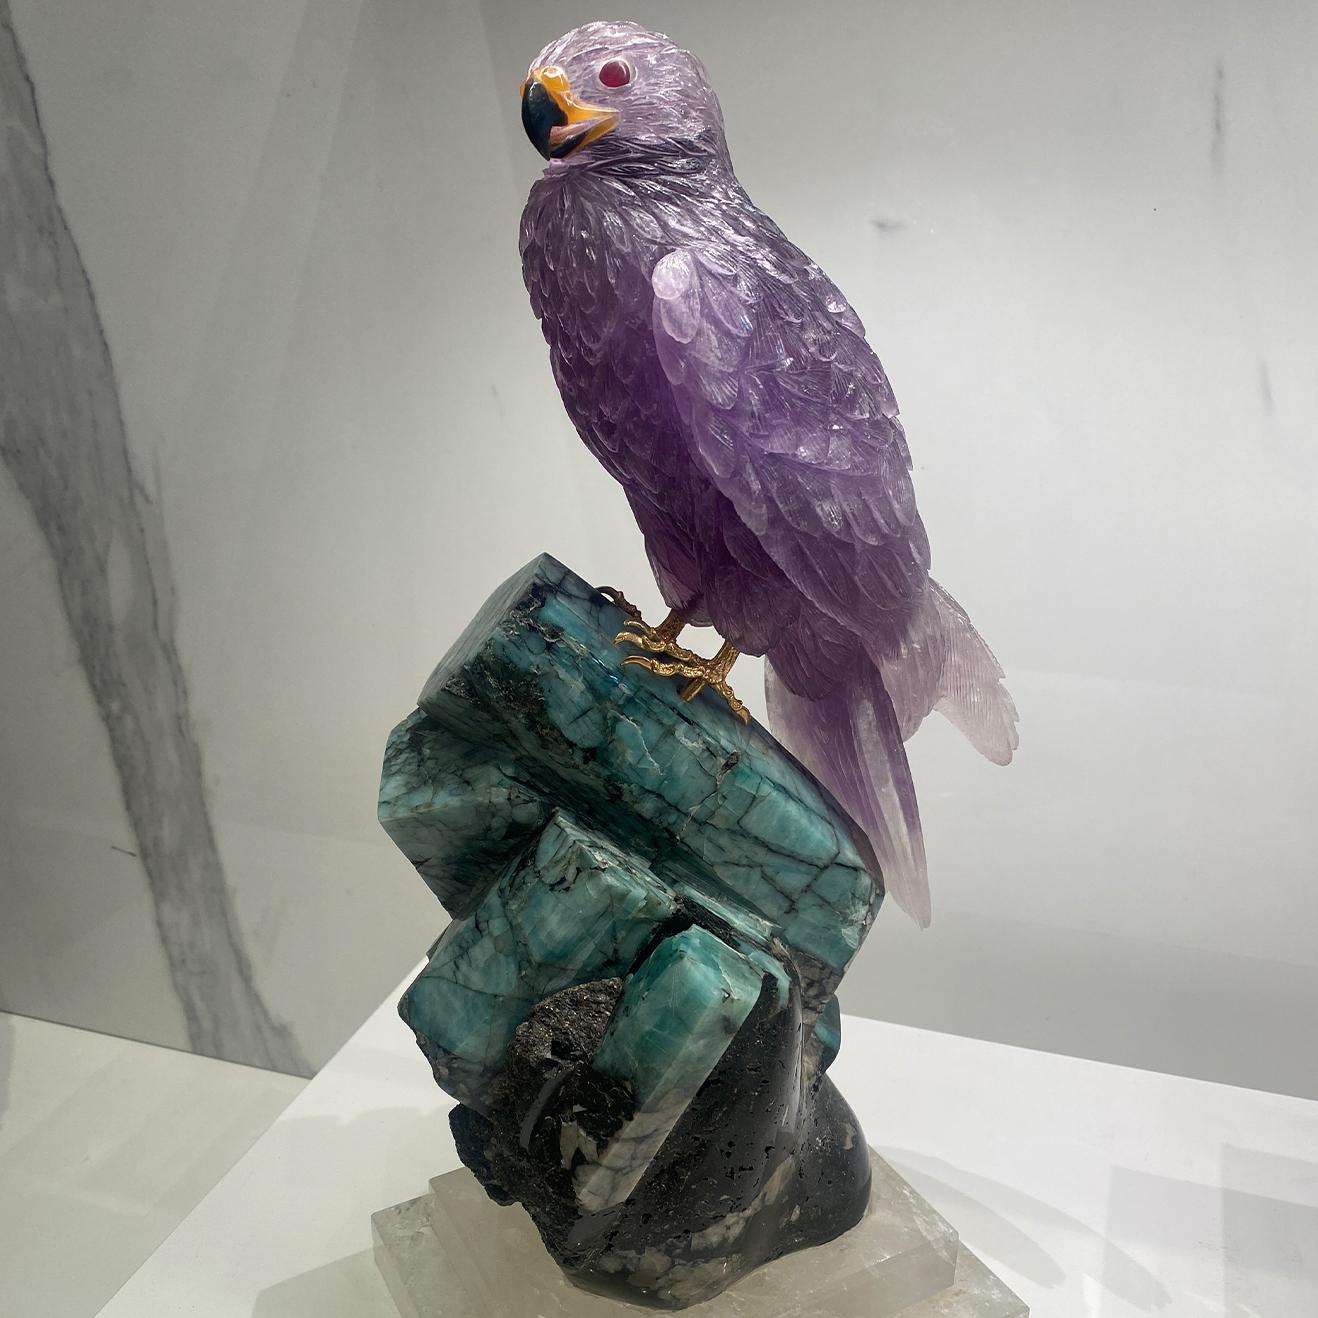 Eine seltene, einzigartige Skulptur eines handgeschnitzten Amethystfalken, der auf einem Sockel in Smaragdkristall thront, der durch eine Plattform aus feinem natürlichem Quarzkristall stabilisiert wird.

- Ein handgeschnitzter Falke aus